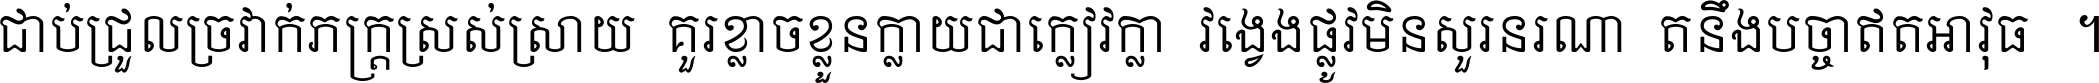 Khmer Mondulkiri-s